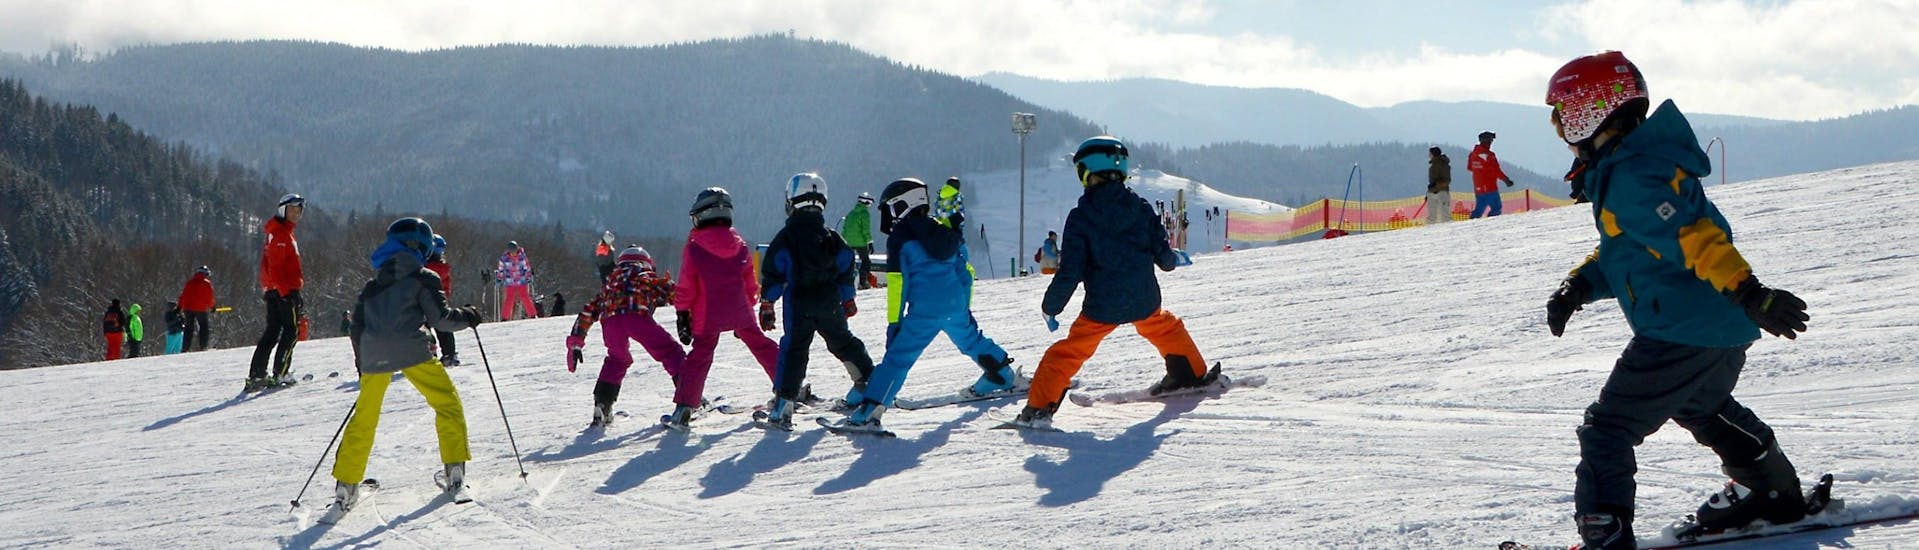 Skilessen voor kinderen (6-12 jaar) voor alle niveaus met Eco Ski School Andermatt.